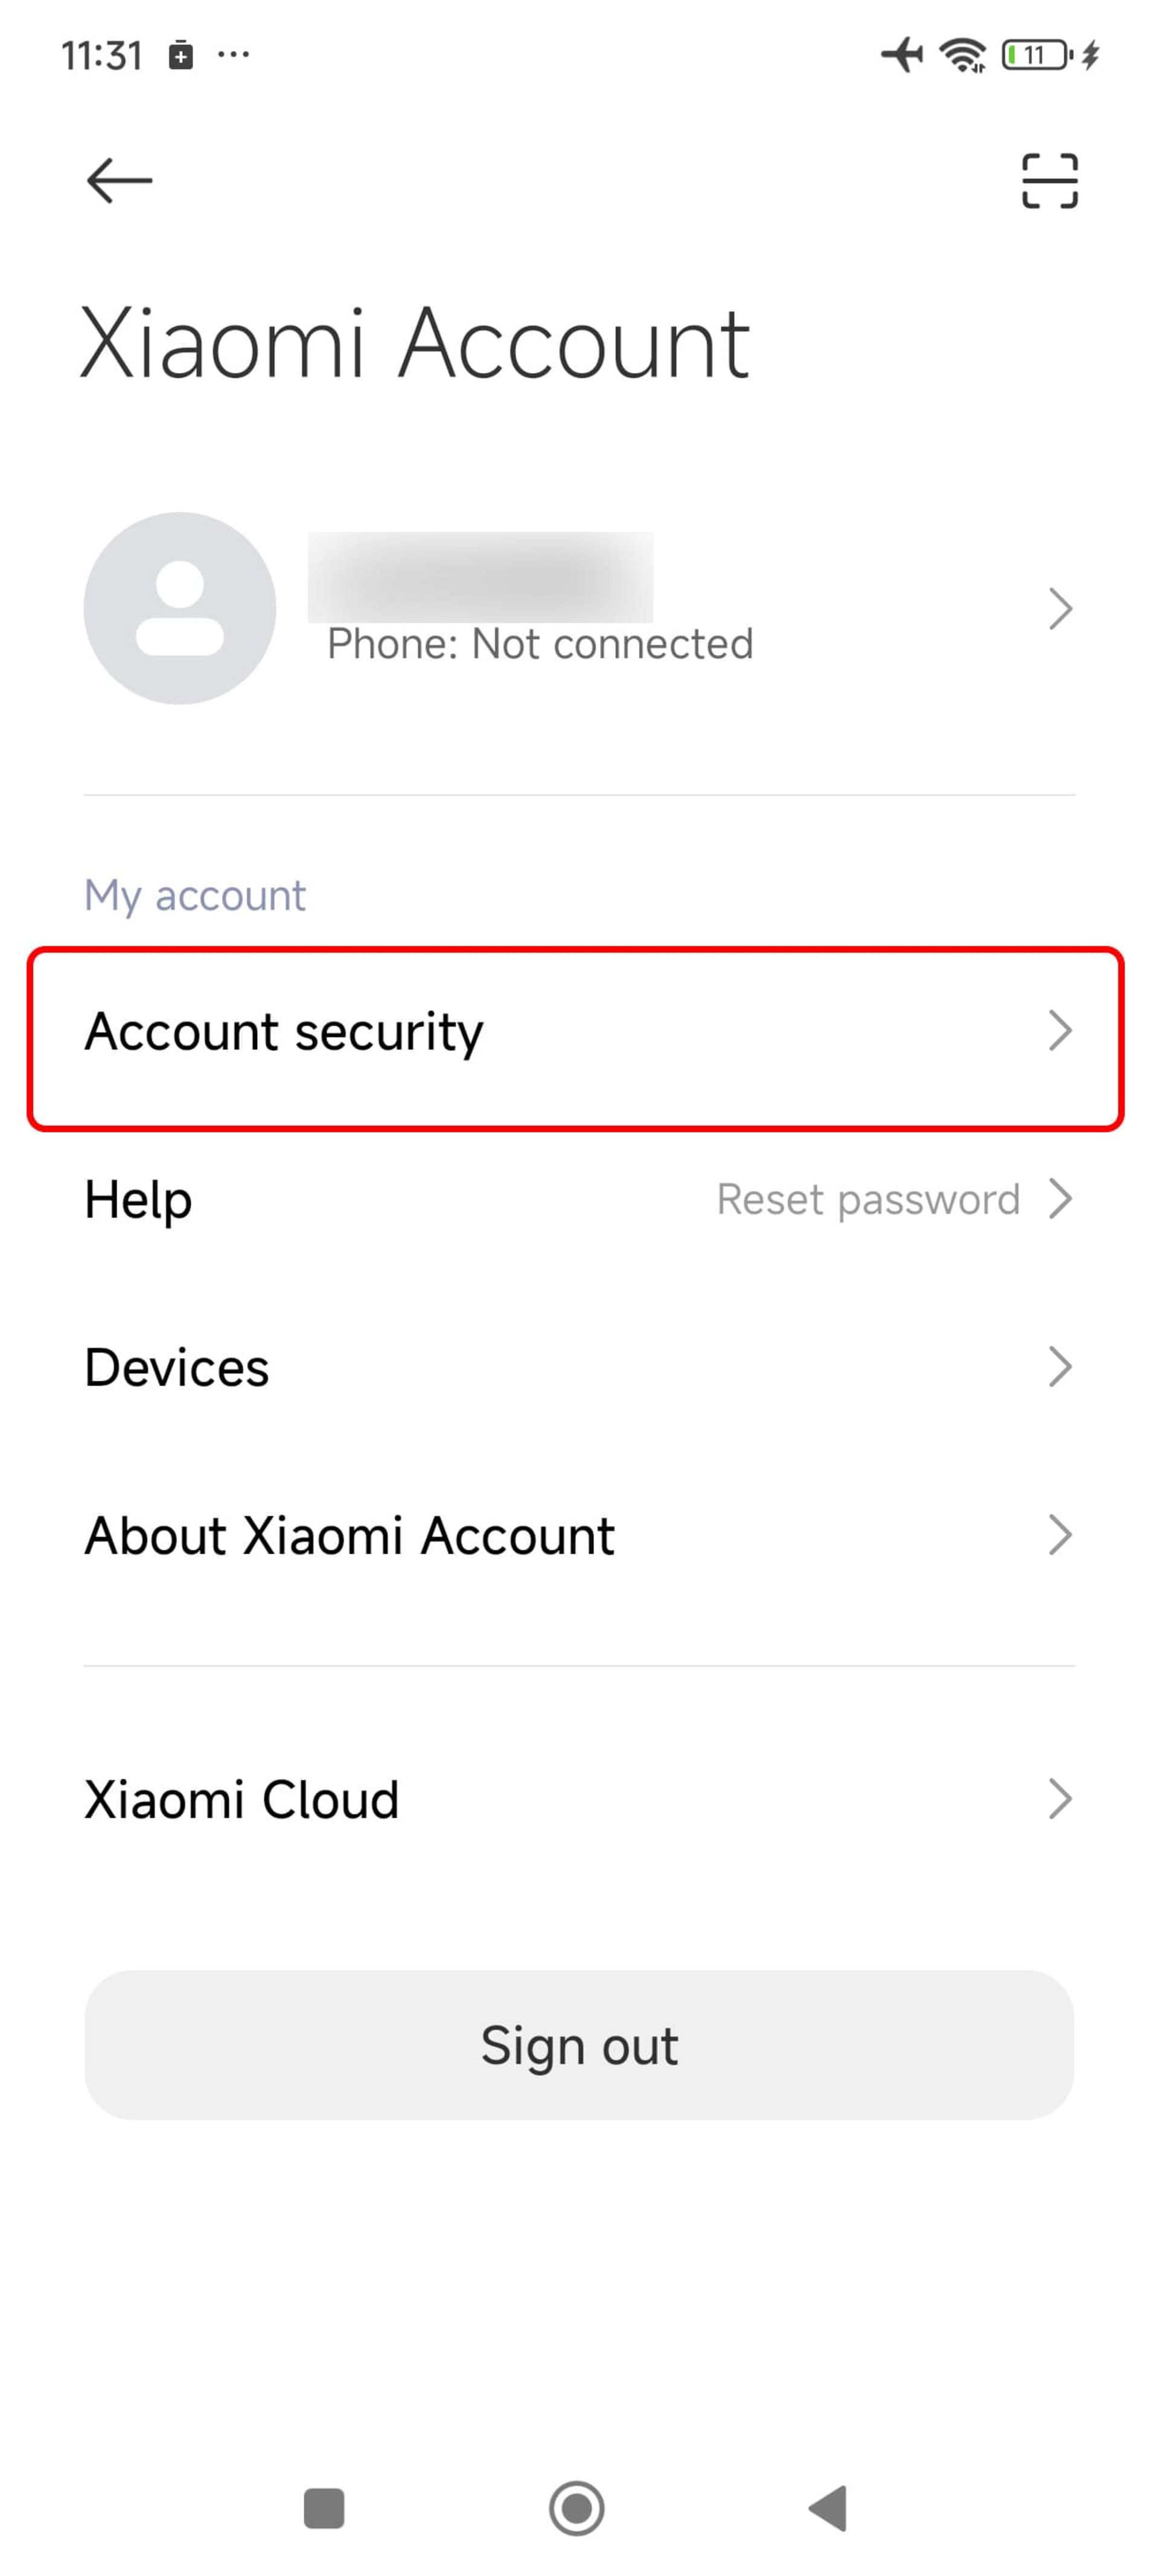 انتخاب Account security